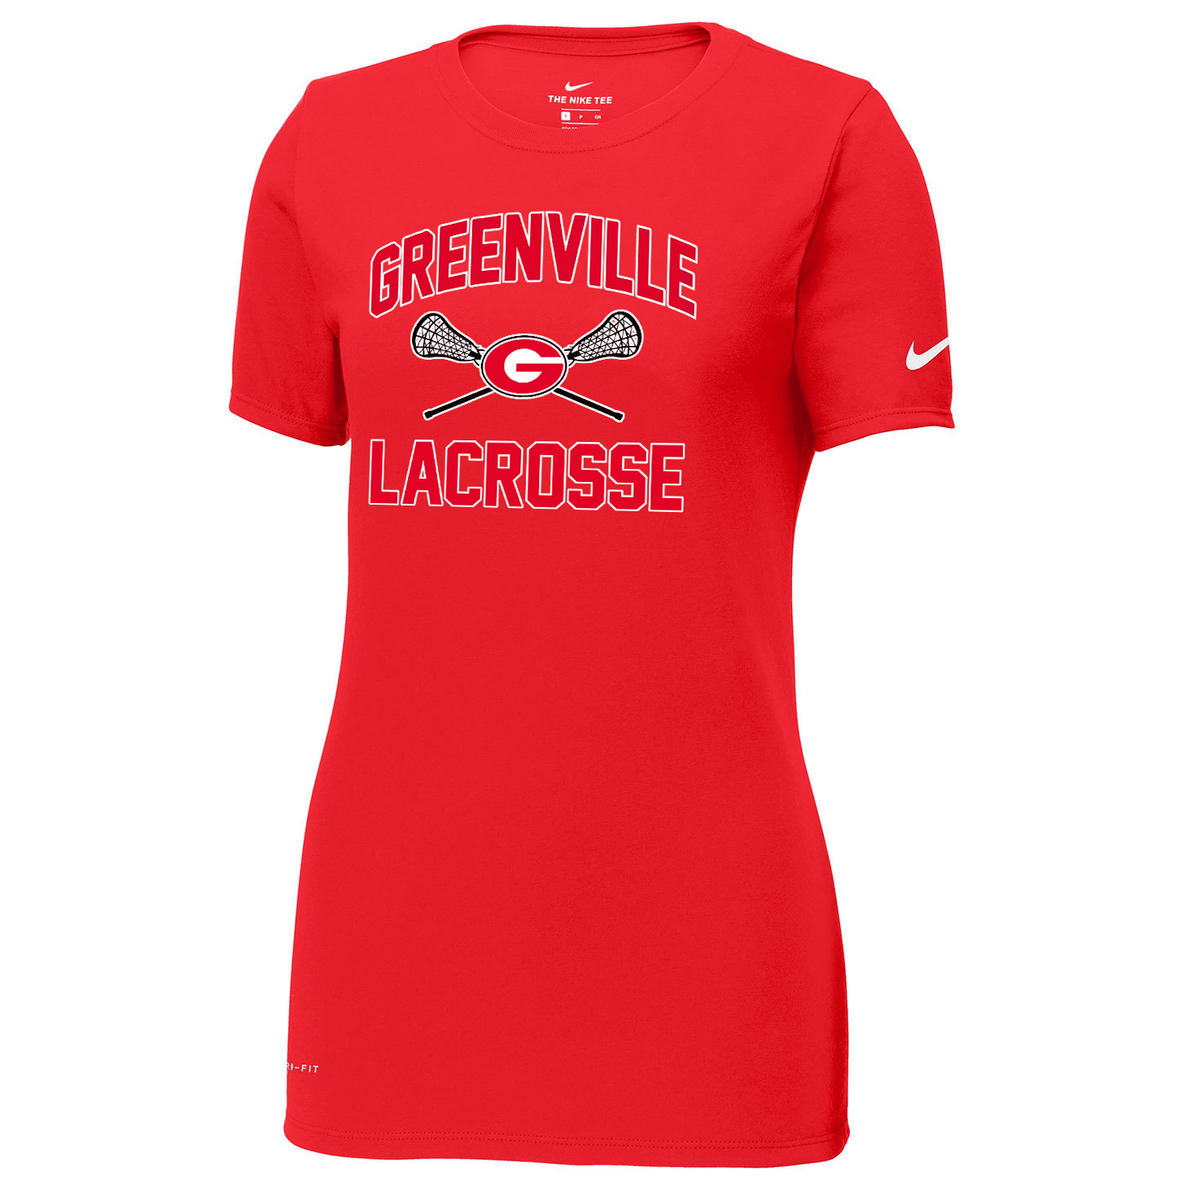 Greenville Girls Lacrosse Nike Ladies Dri-FIT Tee